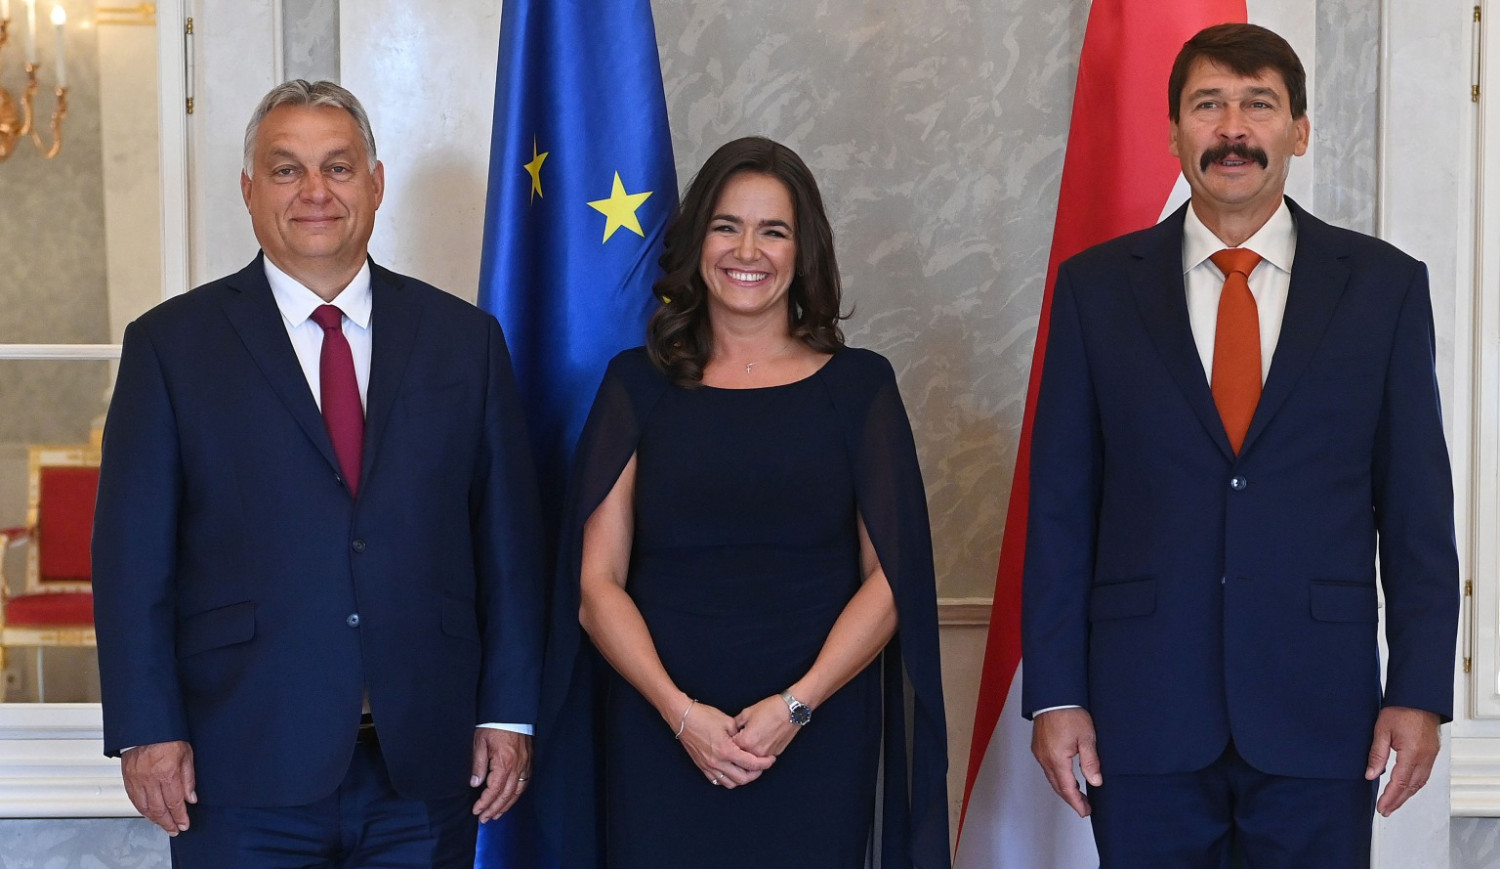 Cùng Tổng thống Áder János và Thủ tướng Orbán Viktor - Ảnh: hungarytoday.hu